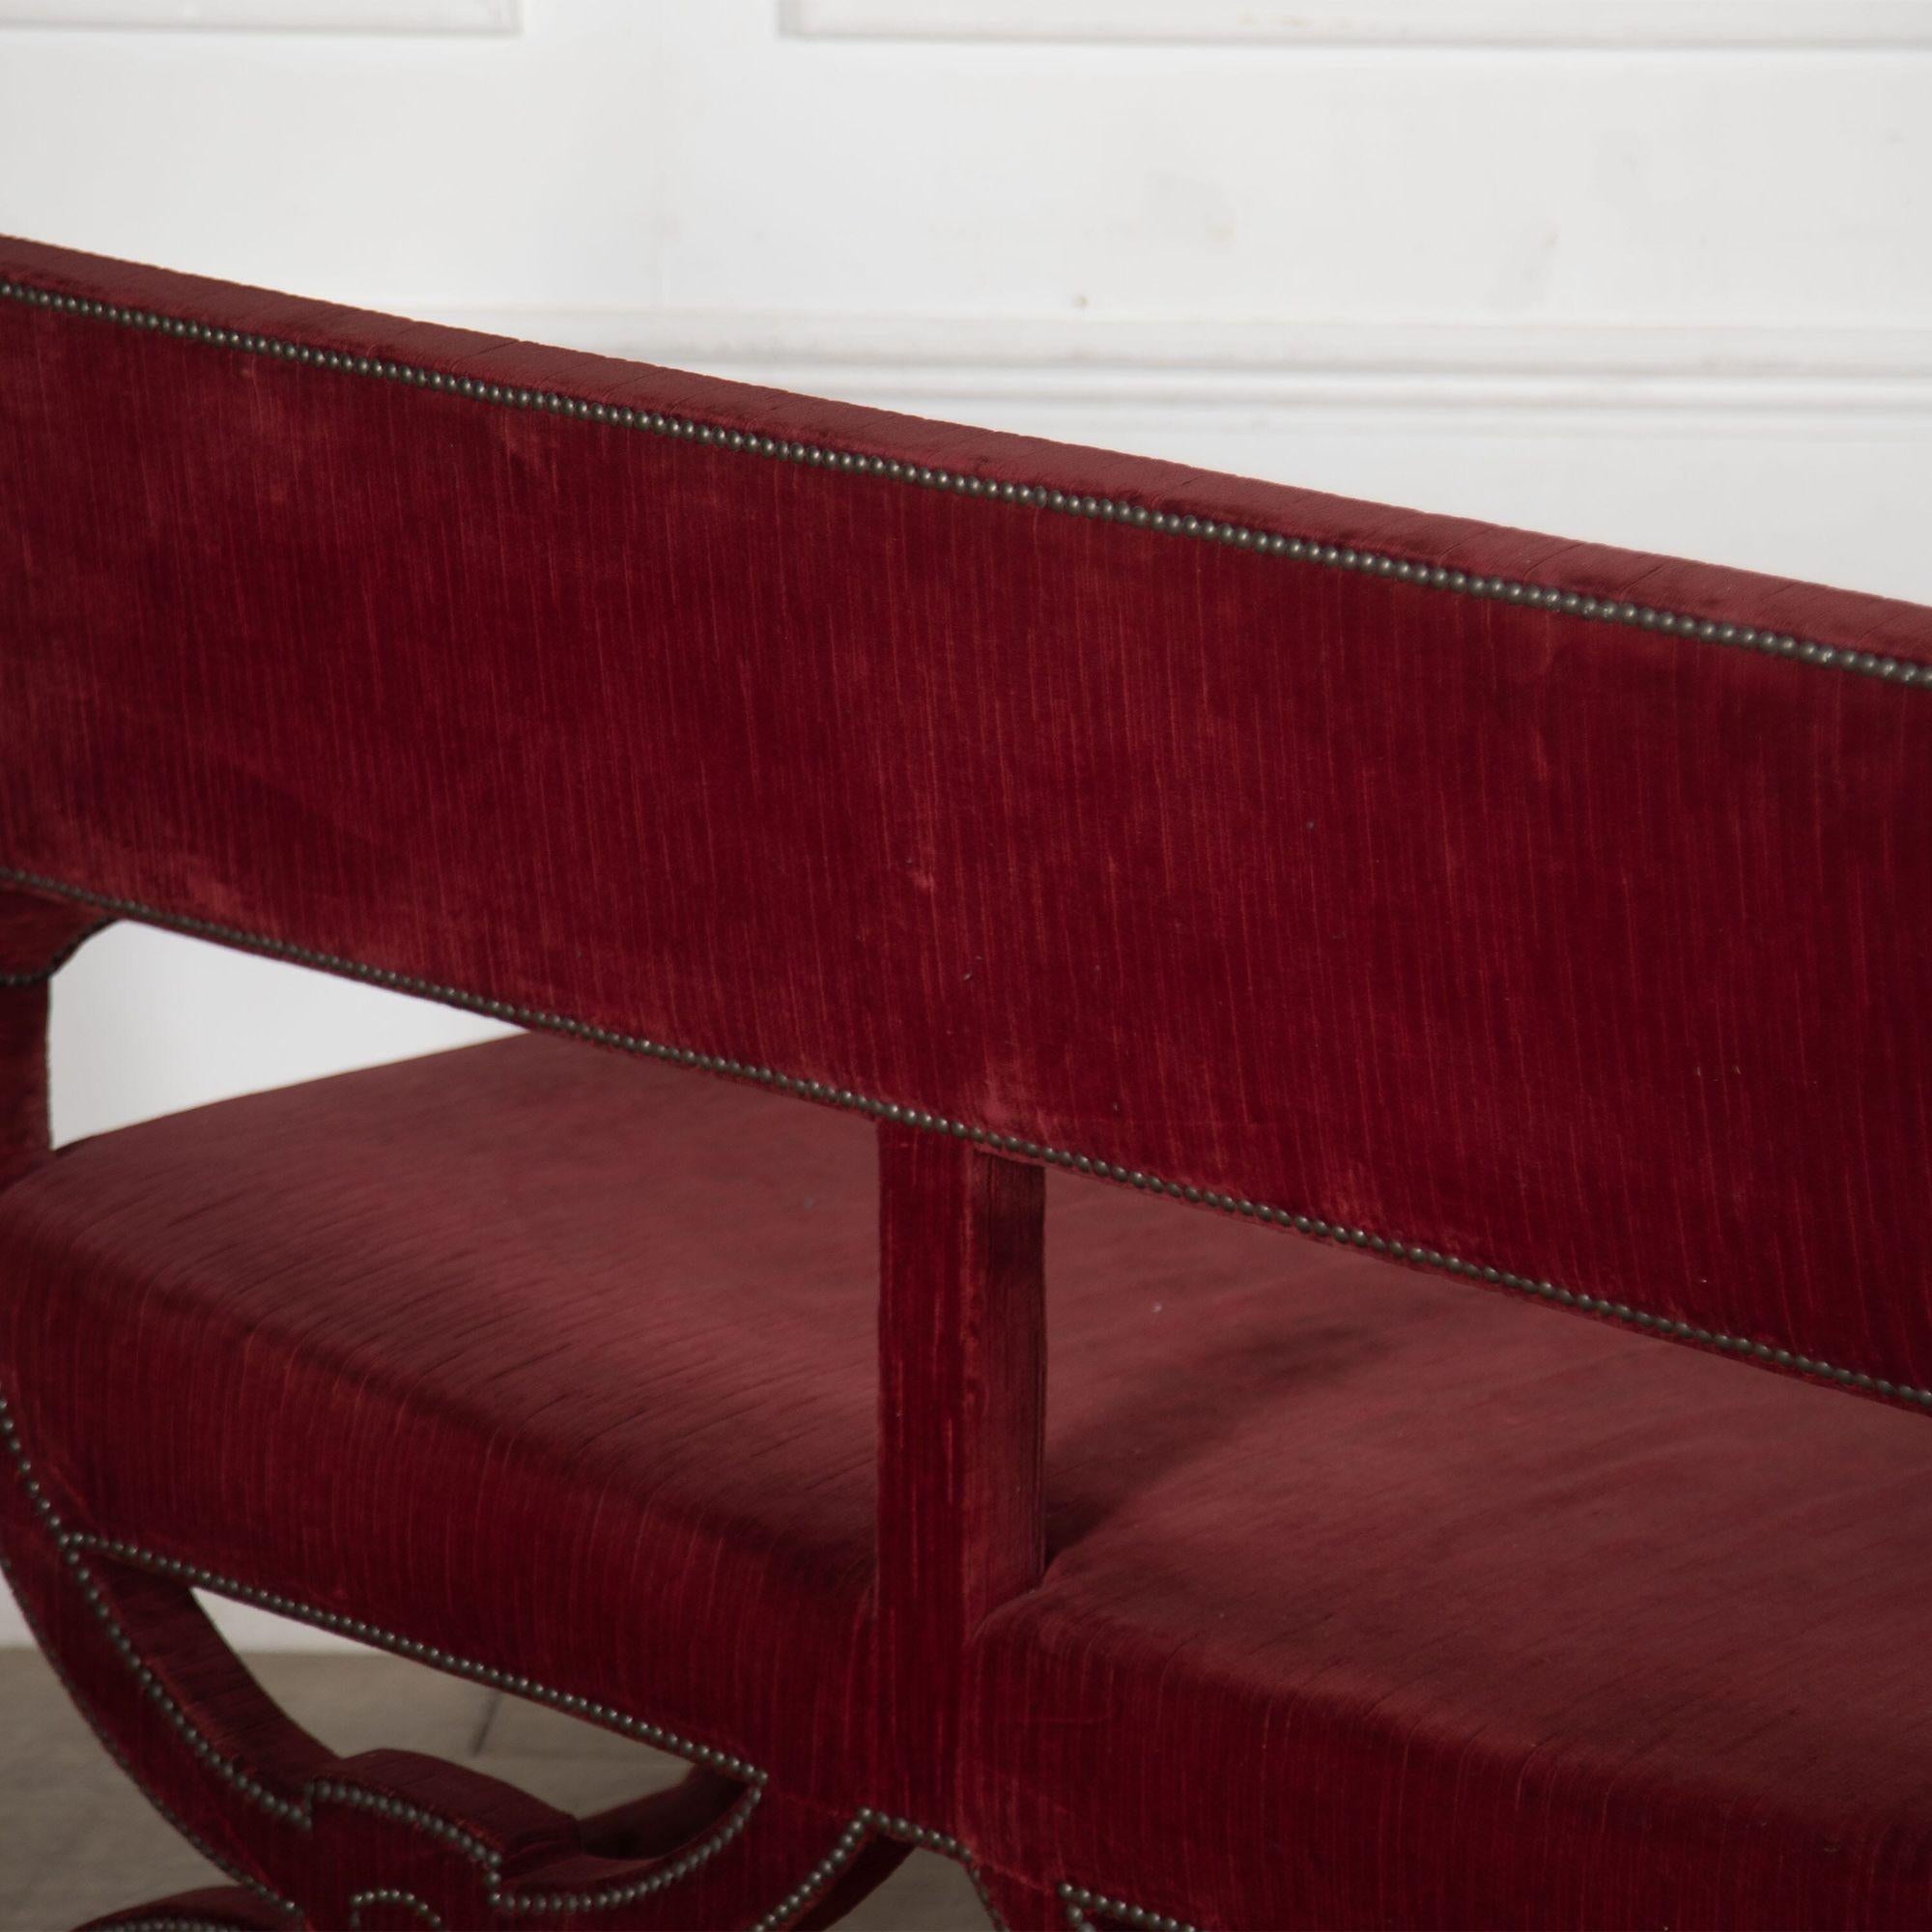 20th century French red velvet sofa in original fabric. 
circa 1900.